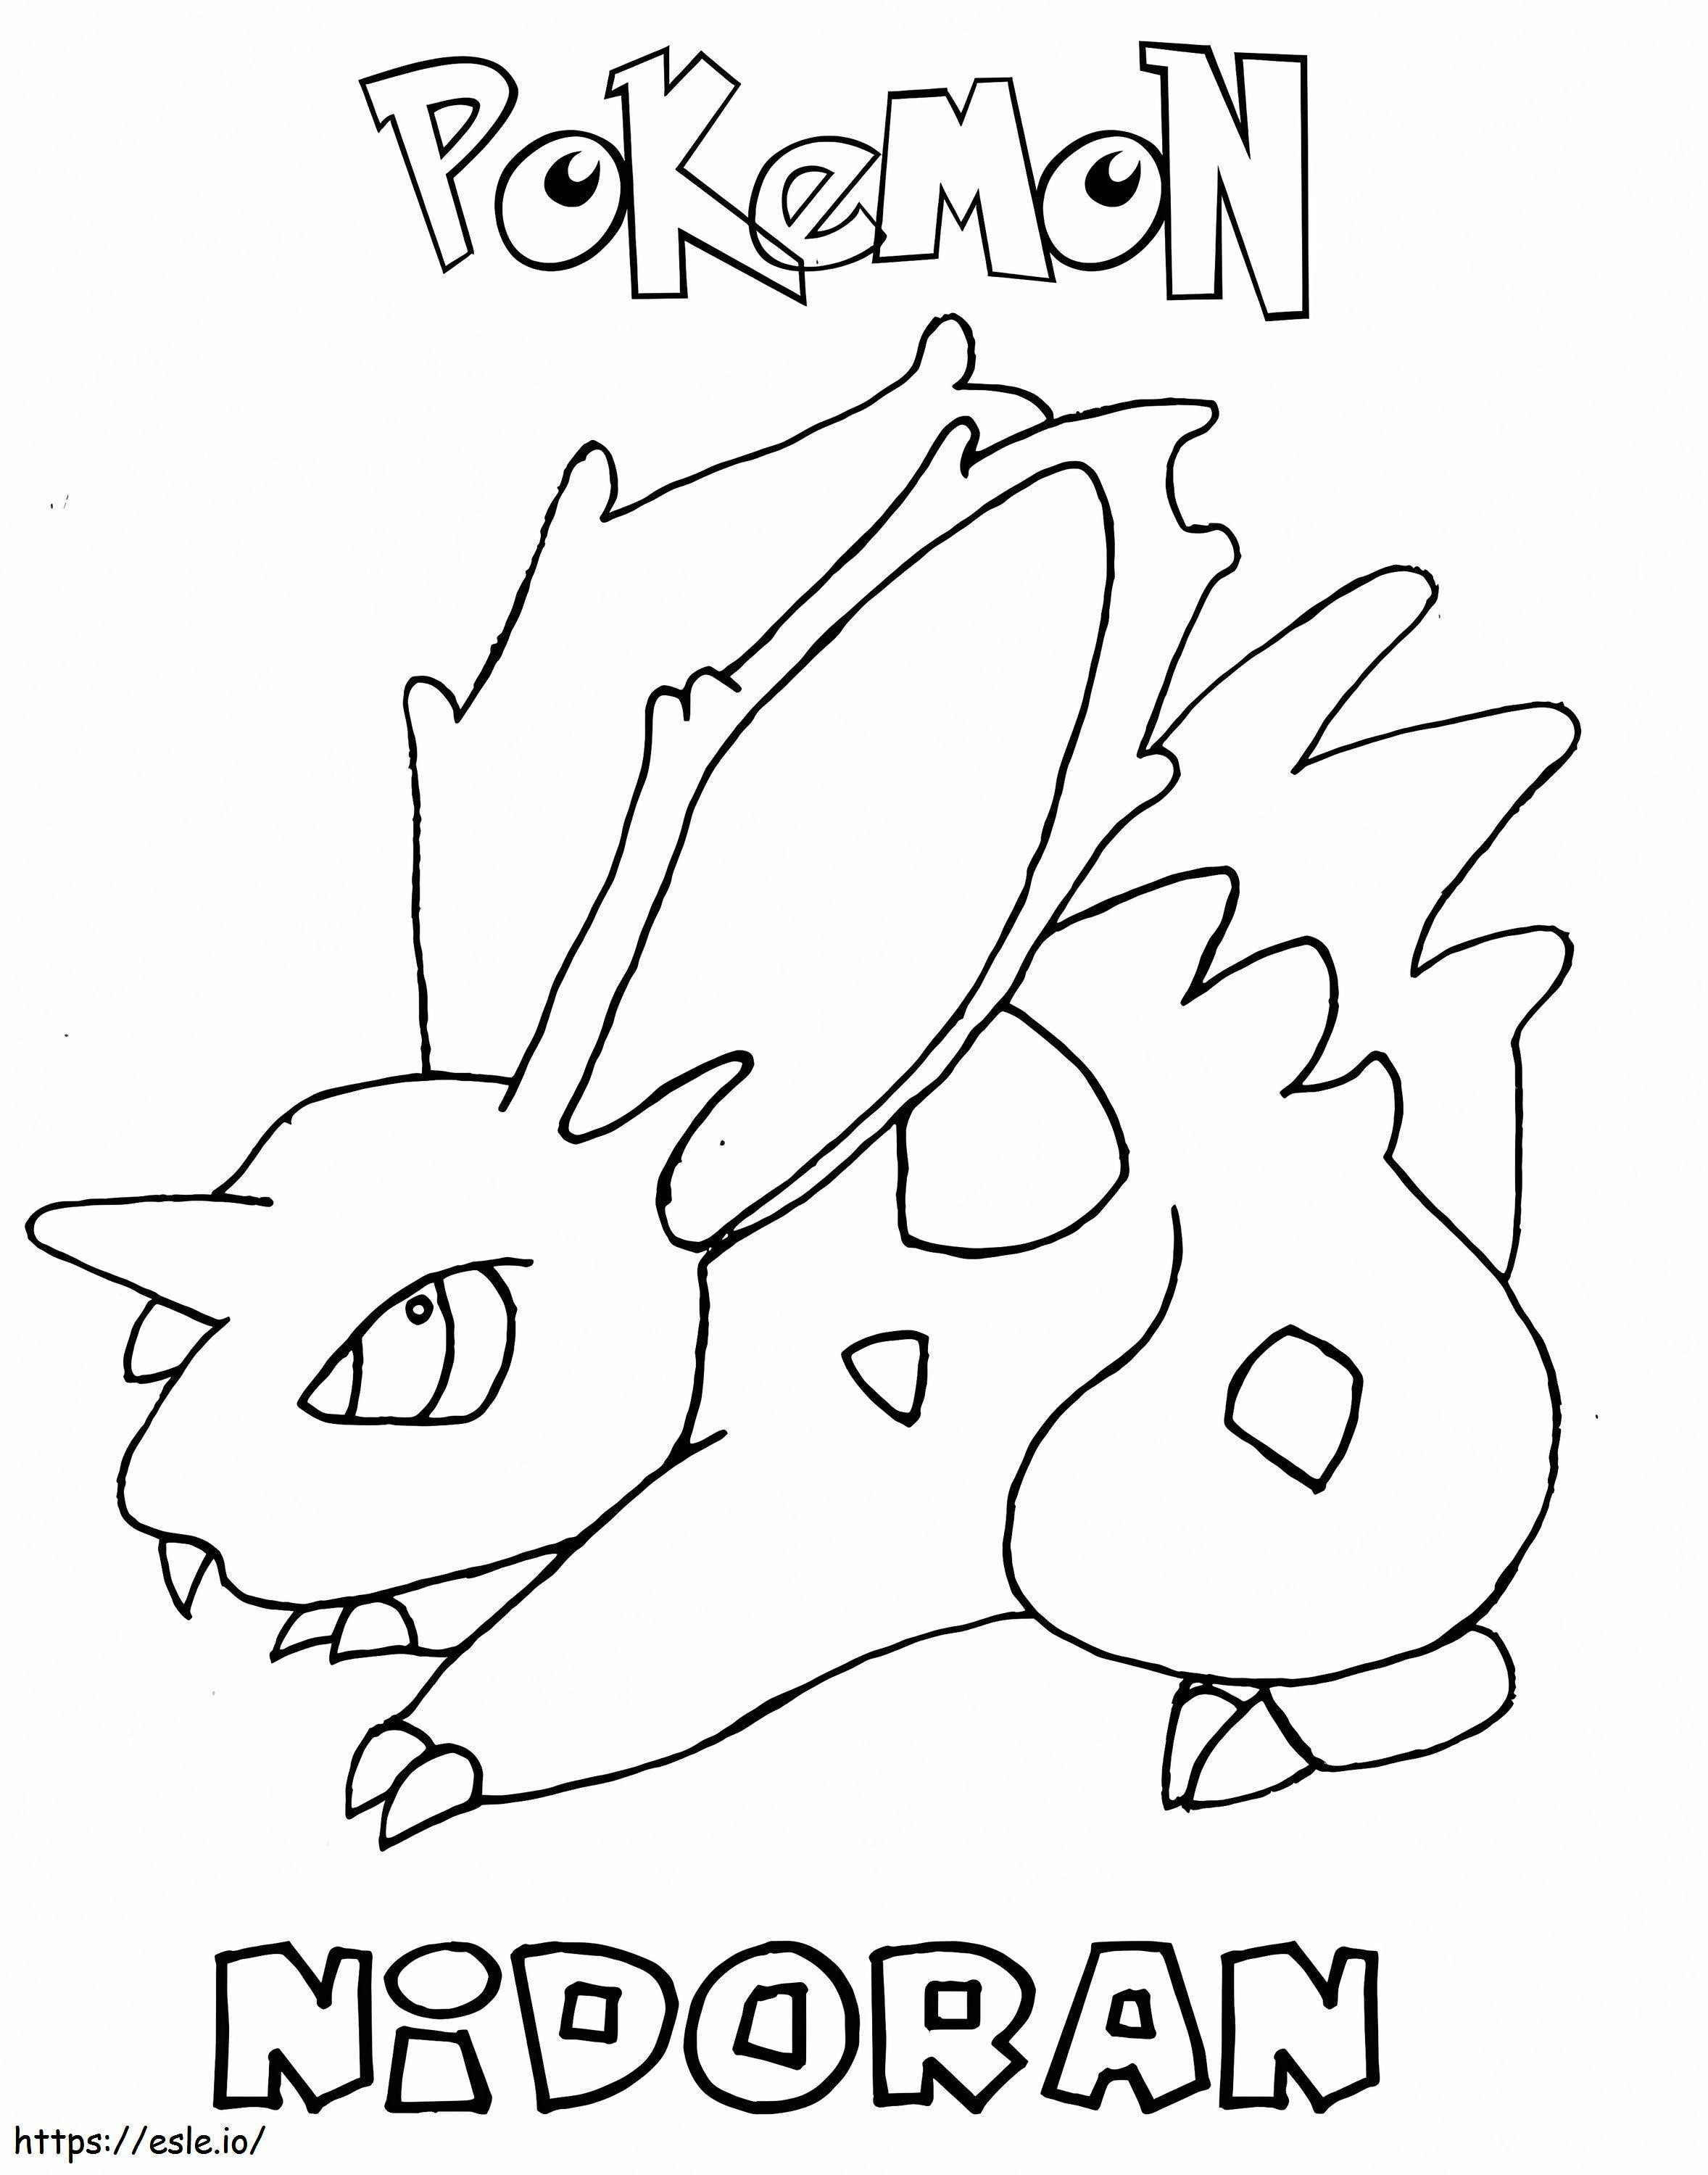 Coloriage Pokémon Nidoranm imprimable à imprimer dessin